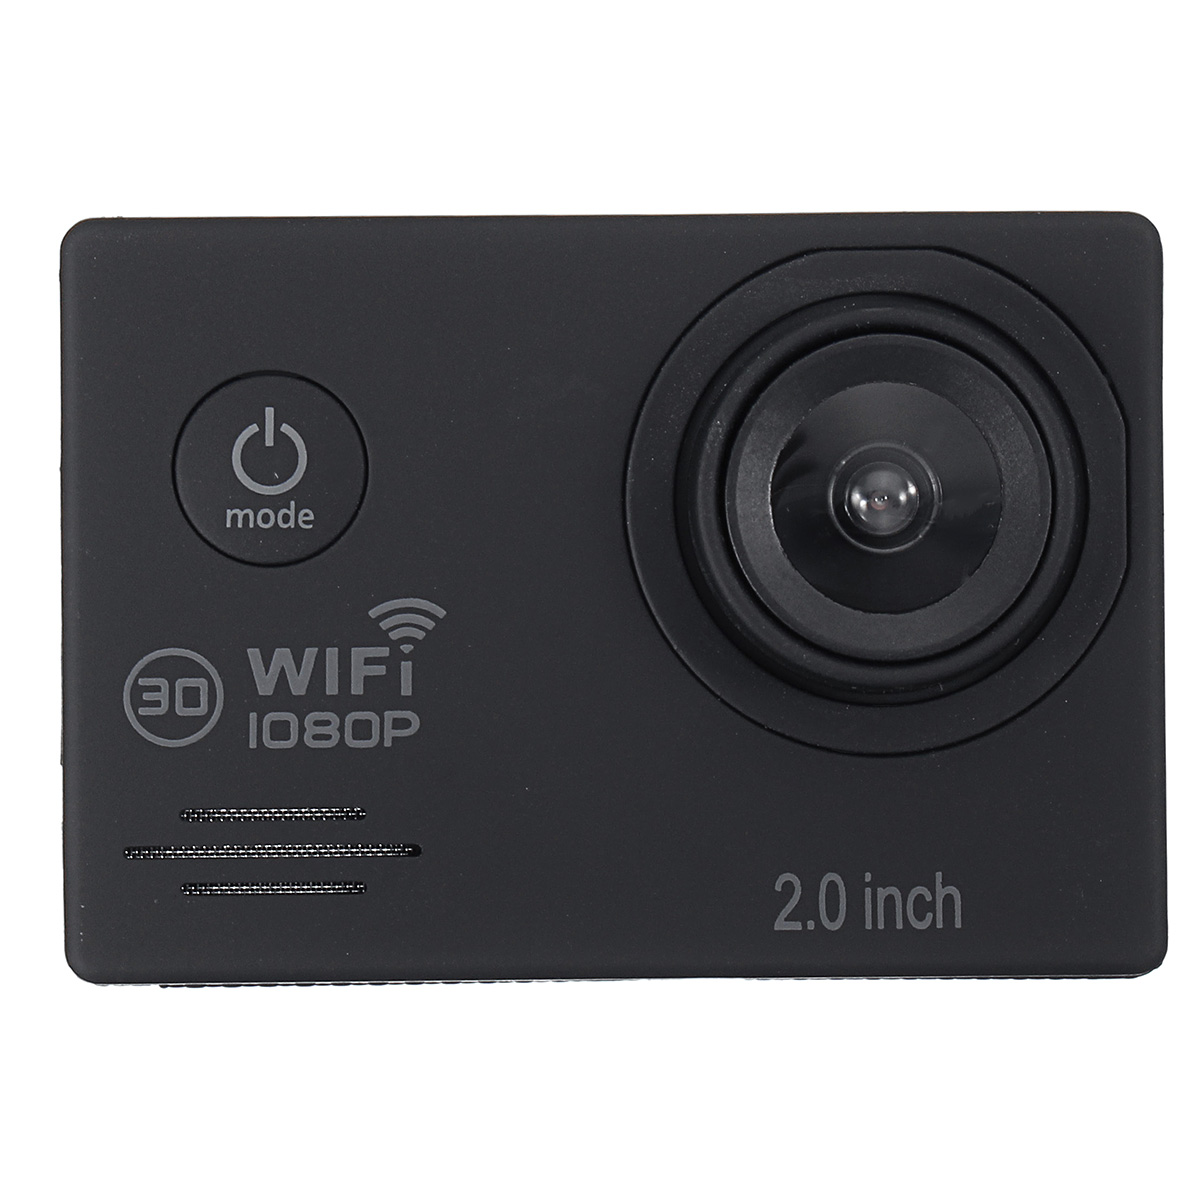 

SJ7000 16MP Водонепроницаемы Full HD 1080P Wifi 2.0 дюймов Экранное действие камера Спорт с аксессуарами Чехол